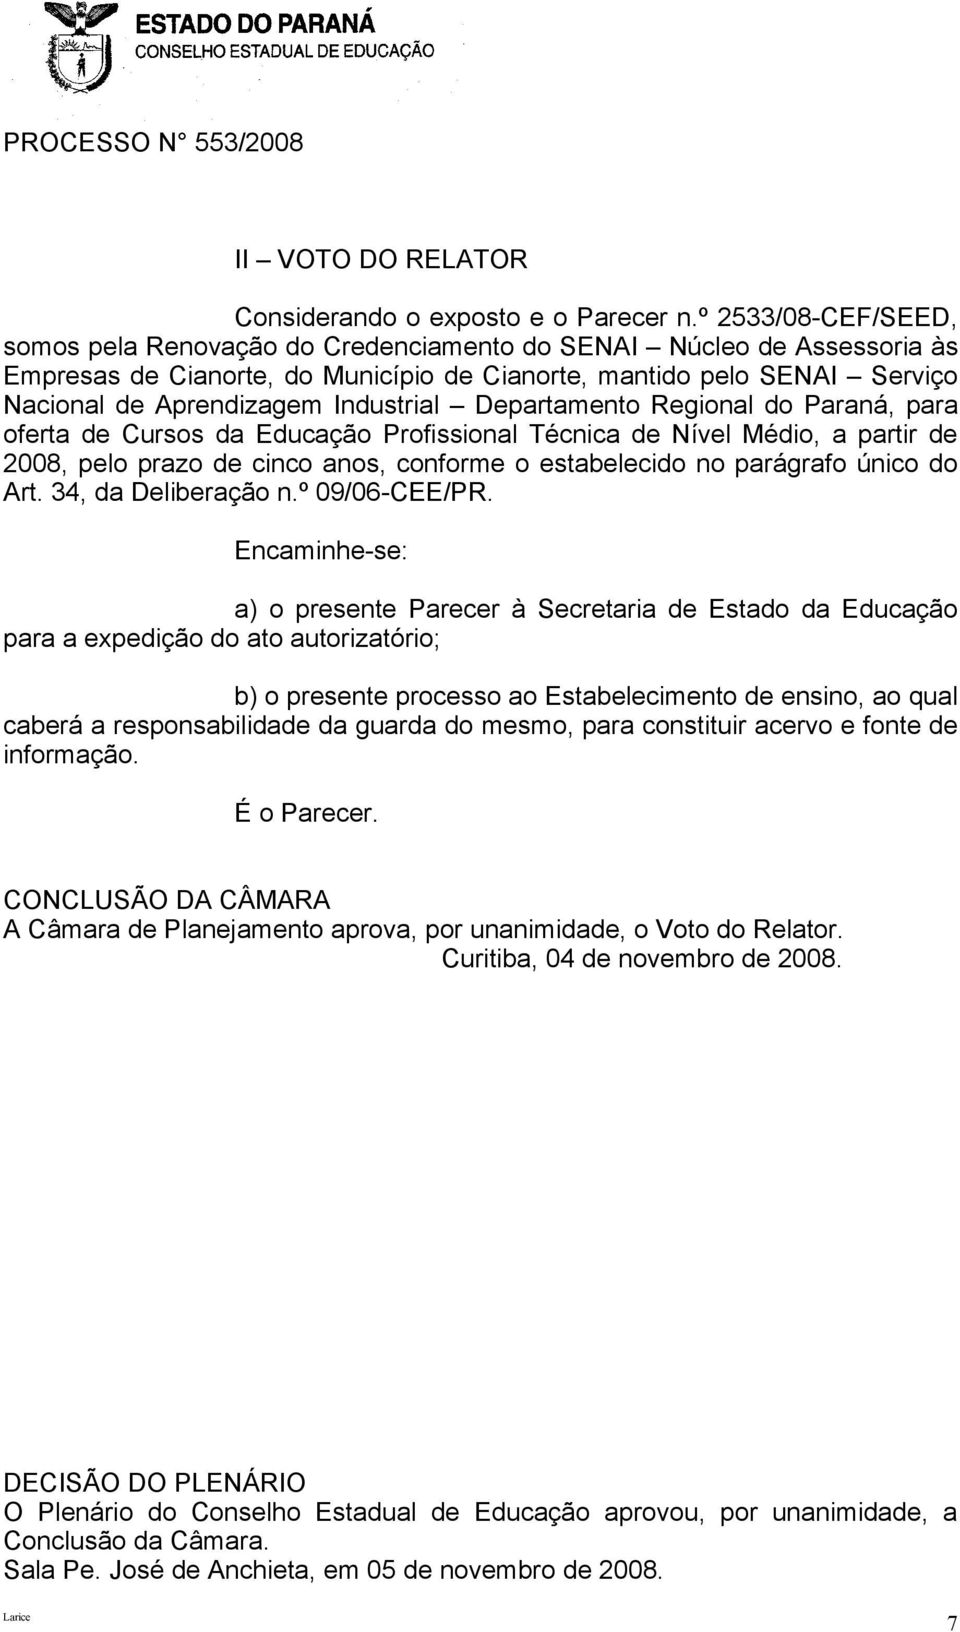 Industrial Departamento Regional do Paraná, para oferta de Cursos da Educação Profissional Técnica de Nível Médio, a partir de 2008, pelo prazo de cinco anos, conforme o estabelecido no parágrafo